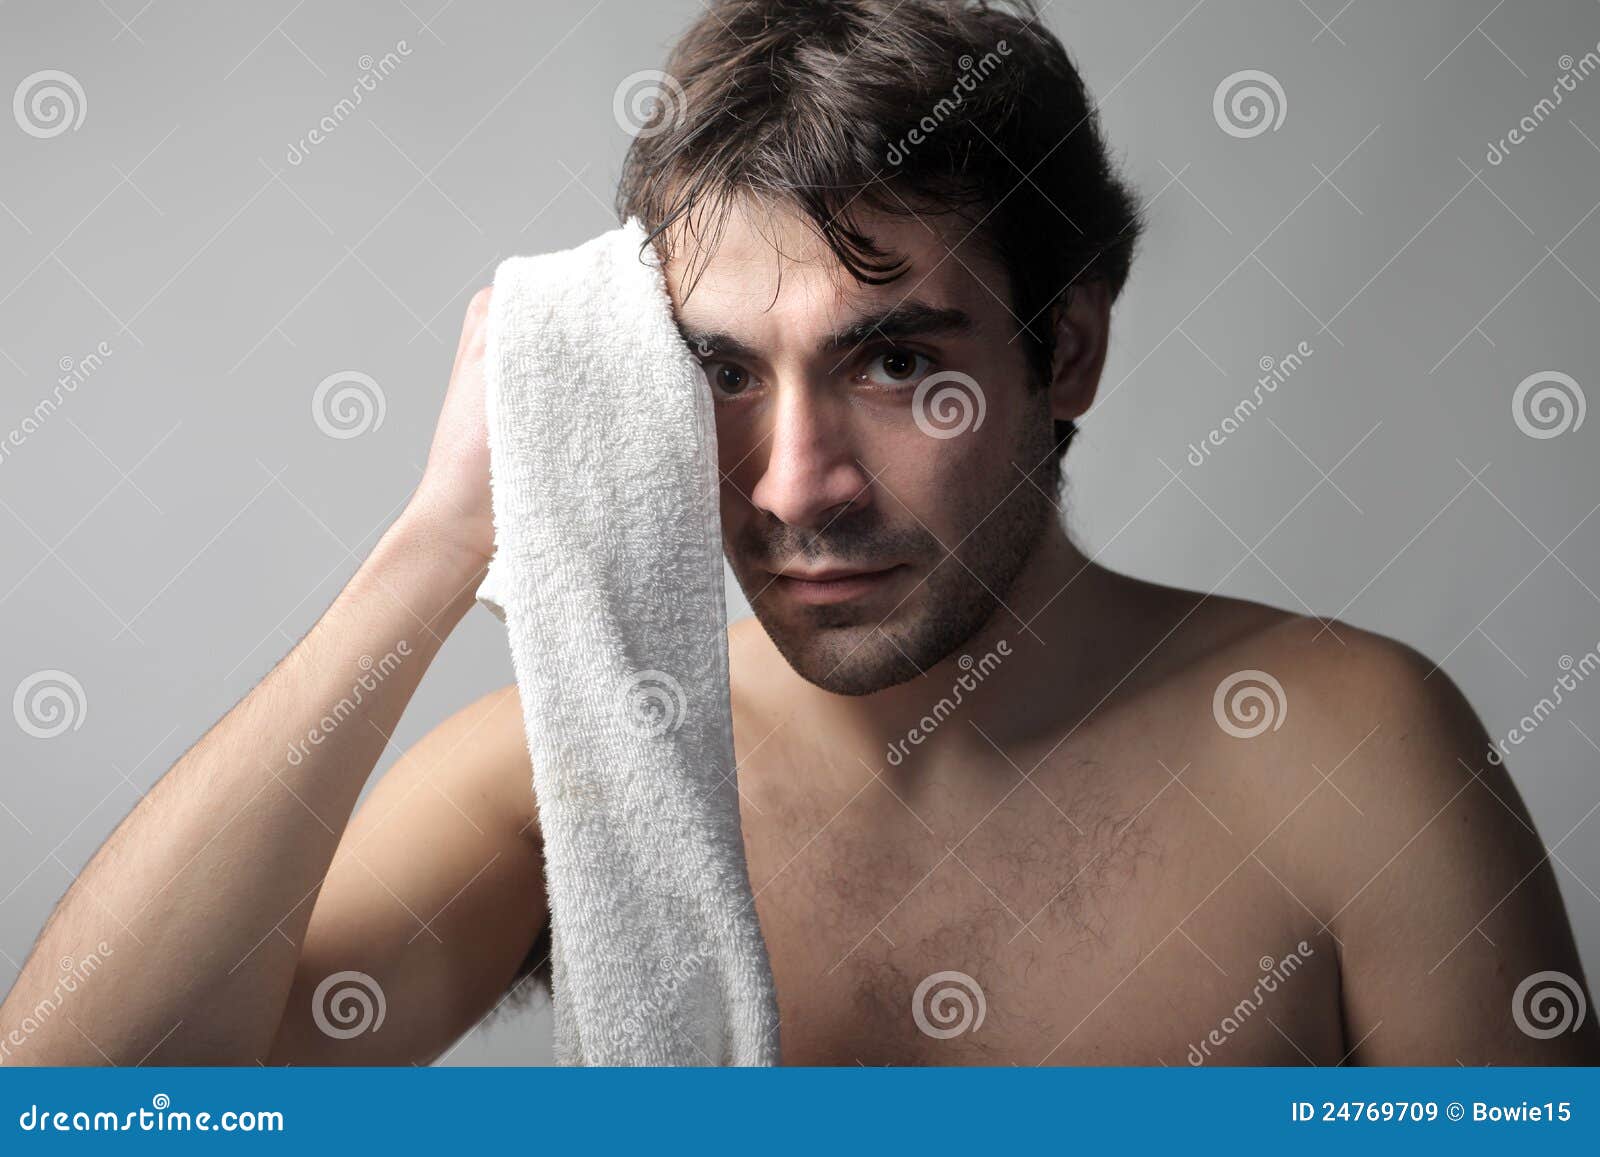 Полотенце на лоб. Полотенце на лоб мужчине. Полотенце на лоб мужчина болеет. Фото человек положил полотенце на лоб. Больной человек с полотенцем на лбу средневековье.